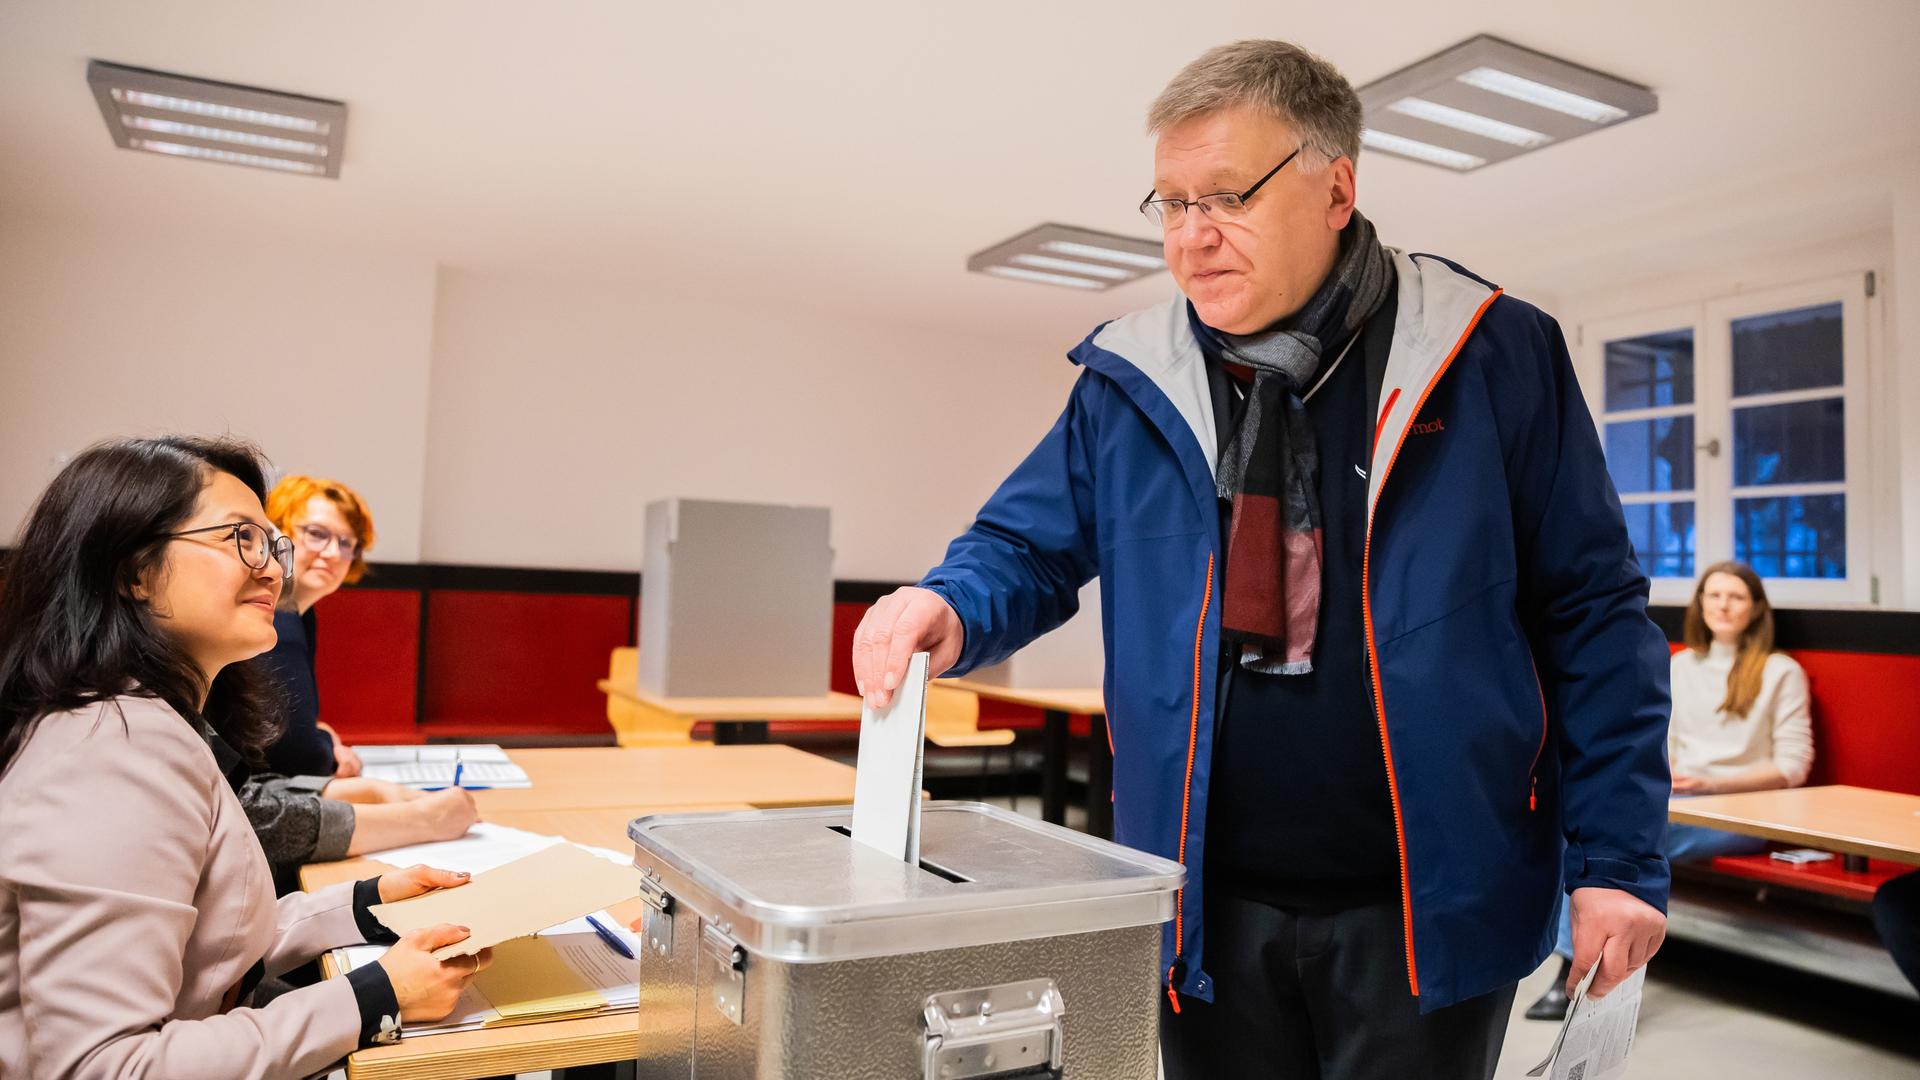 Ein Mann wirft einen Wahlzettel in eine Wahlurne. Zwei Frauen an einem Tisch davor lächeln ihn an.